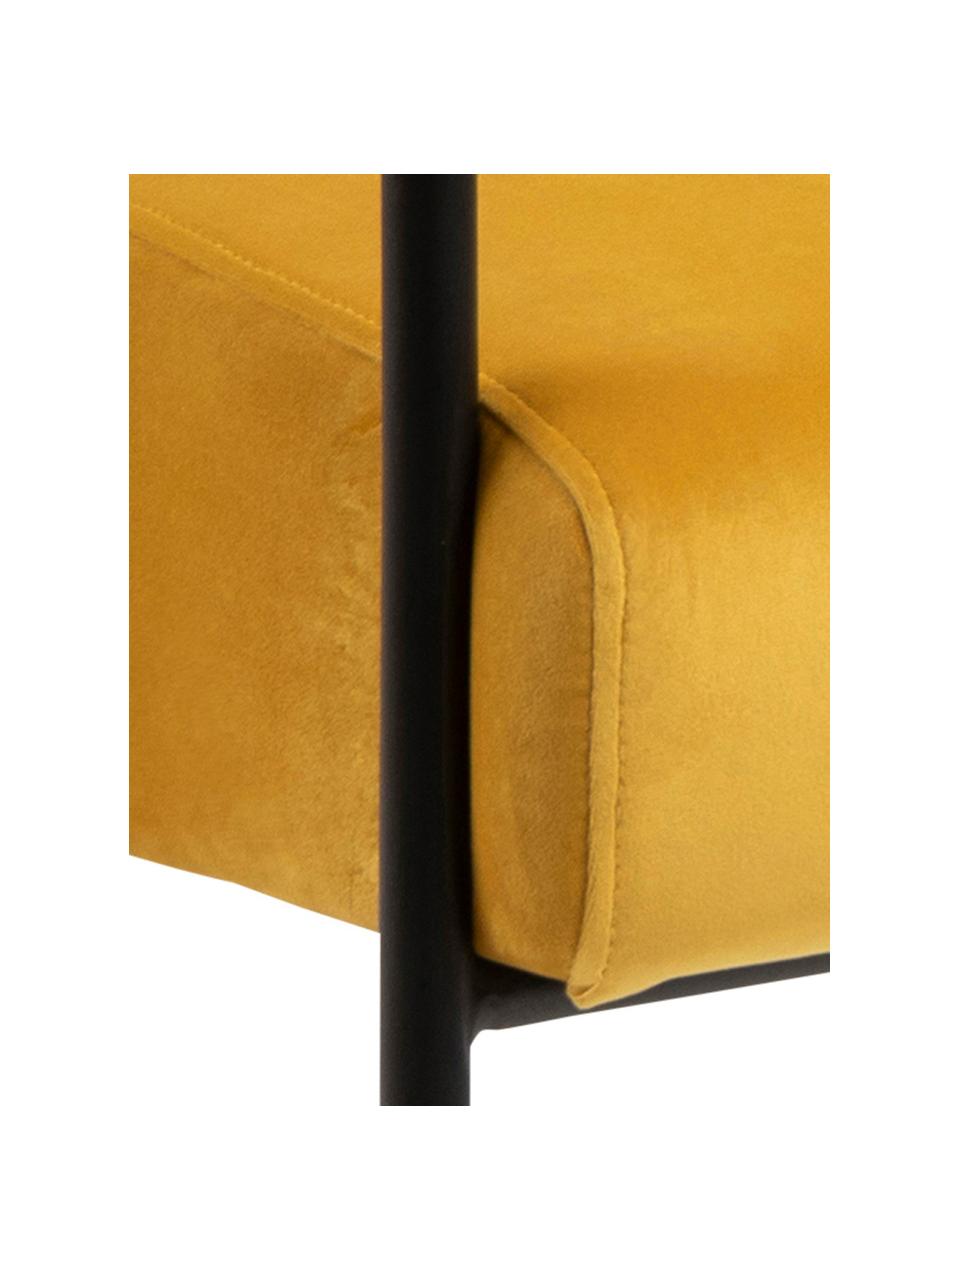 Fluwelen lounge fauteuil Cloe, Bekleding: polyester fluweel, Frame: gepoedercoat metaal, Fluweel geel, 67 x 67 cm